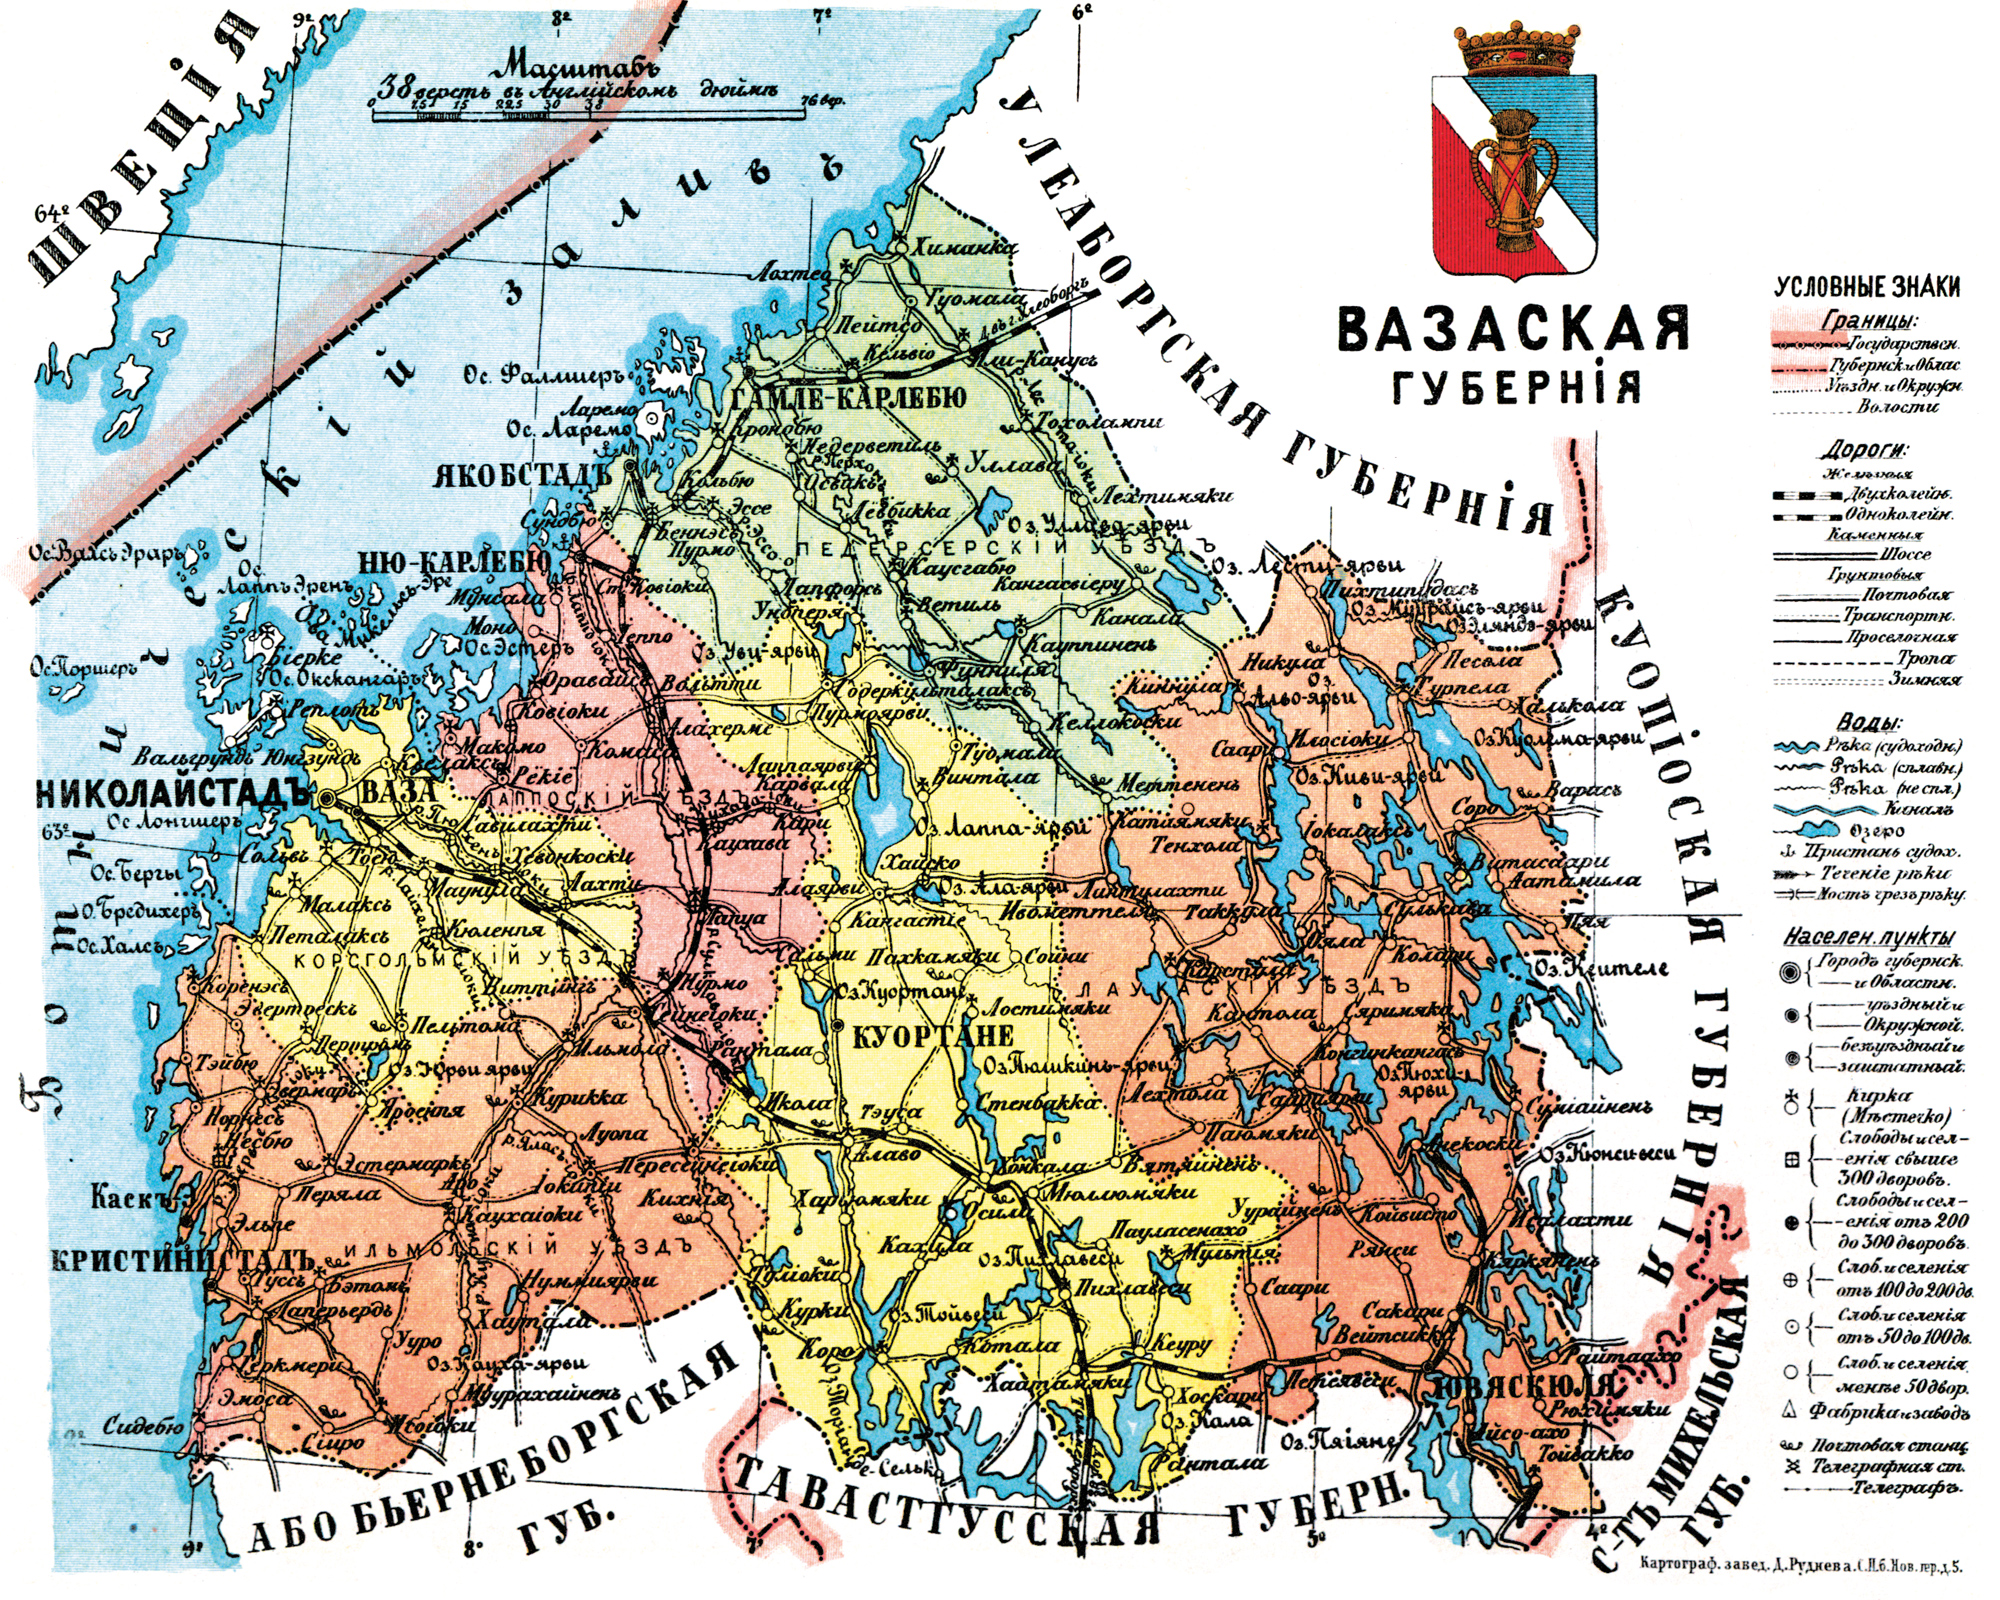 1913 год. Вазаская губерния